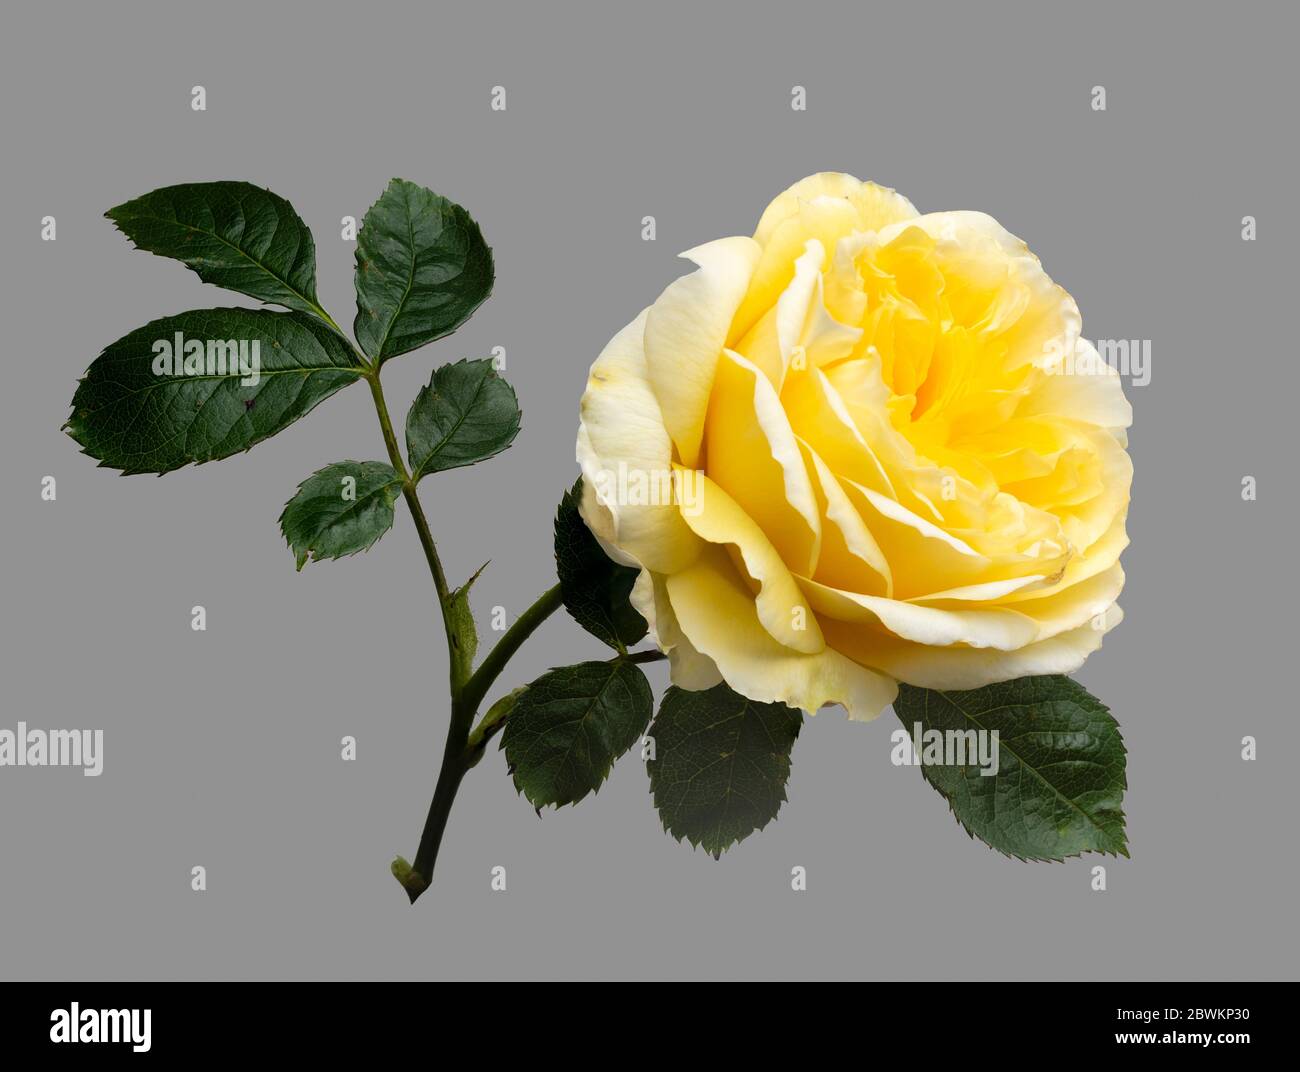 Fleur unique et feuilles de la rose anglaise David Austin, Rosa ;Graham Thomas' sur fond gris Banque D'Images